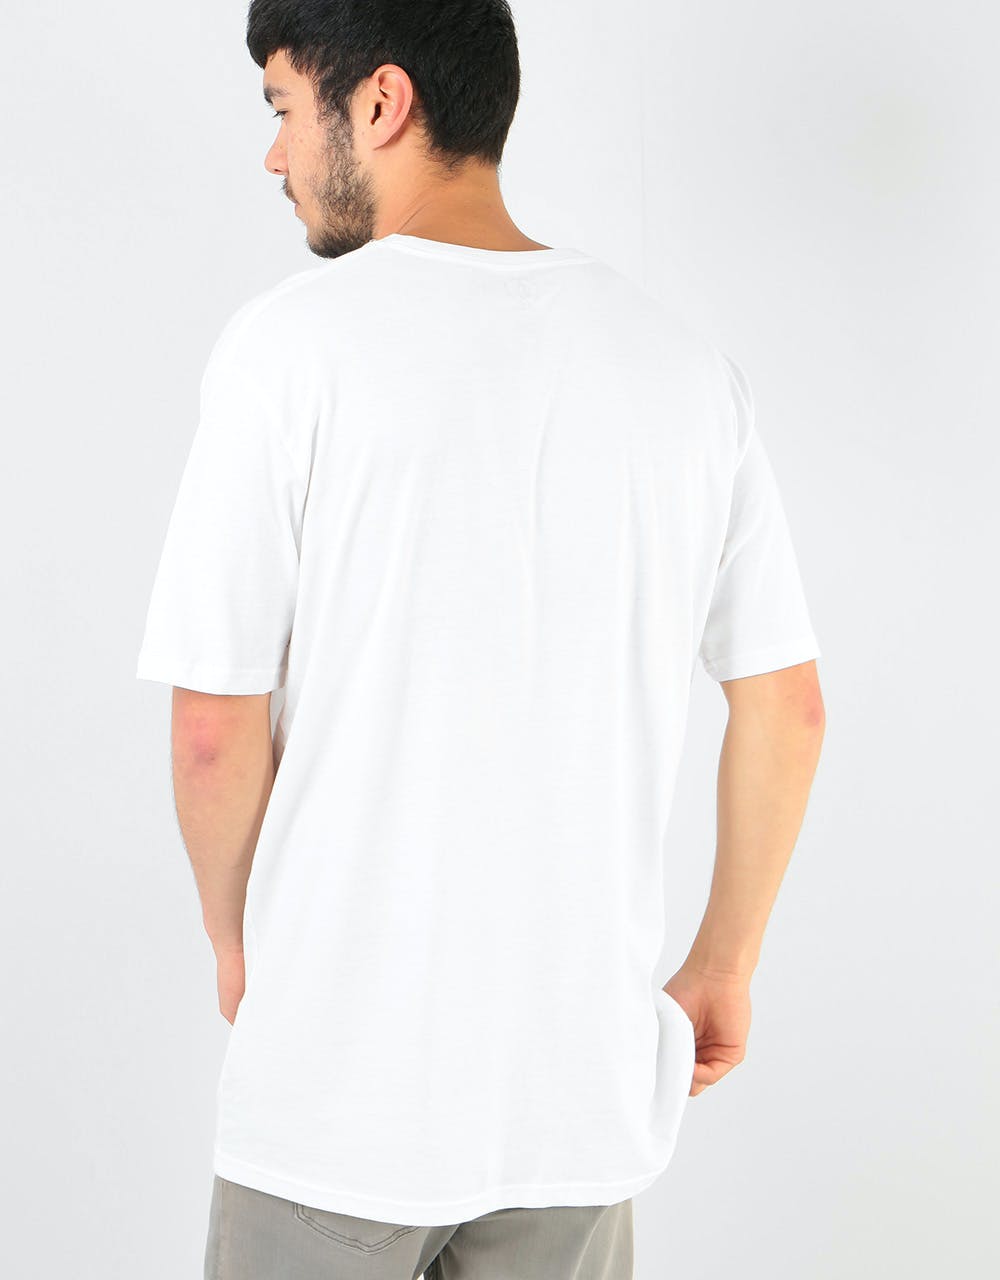 Volcom Crisp Euro Basic T-Shirt - White